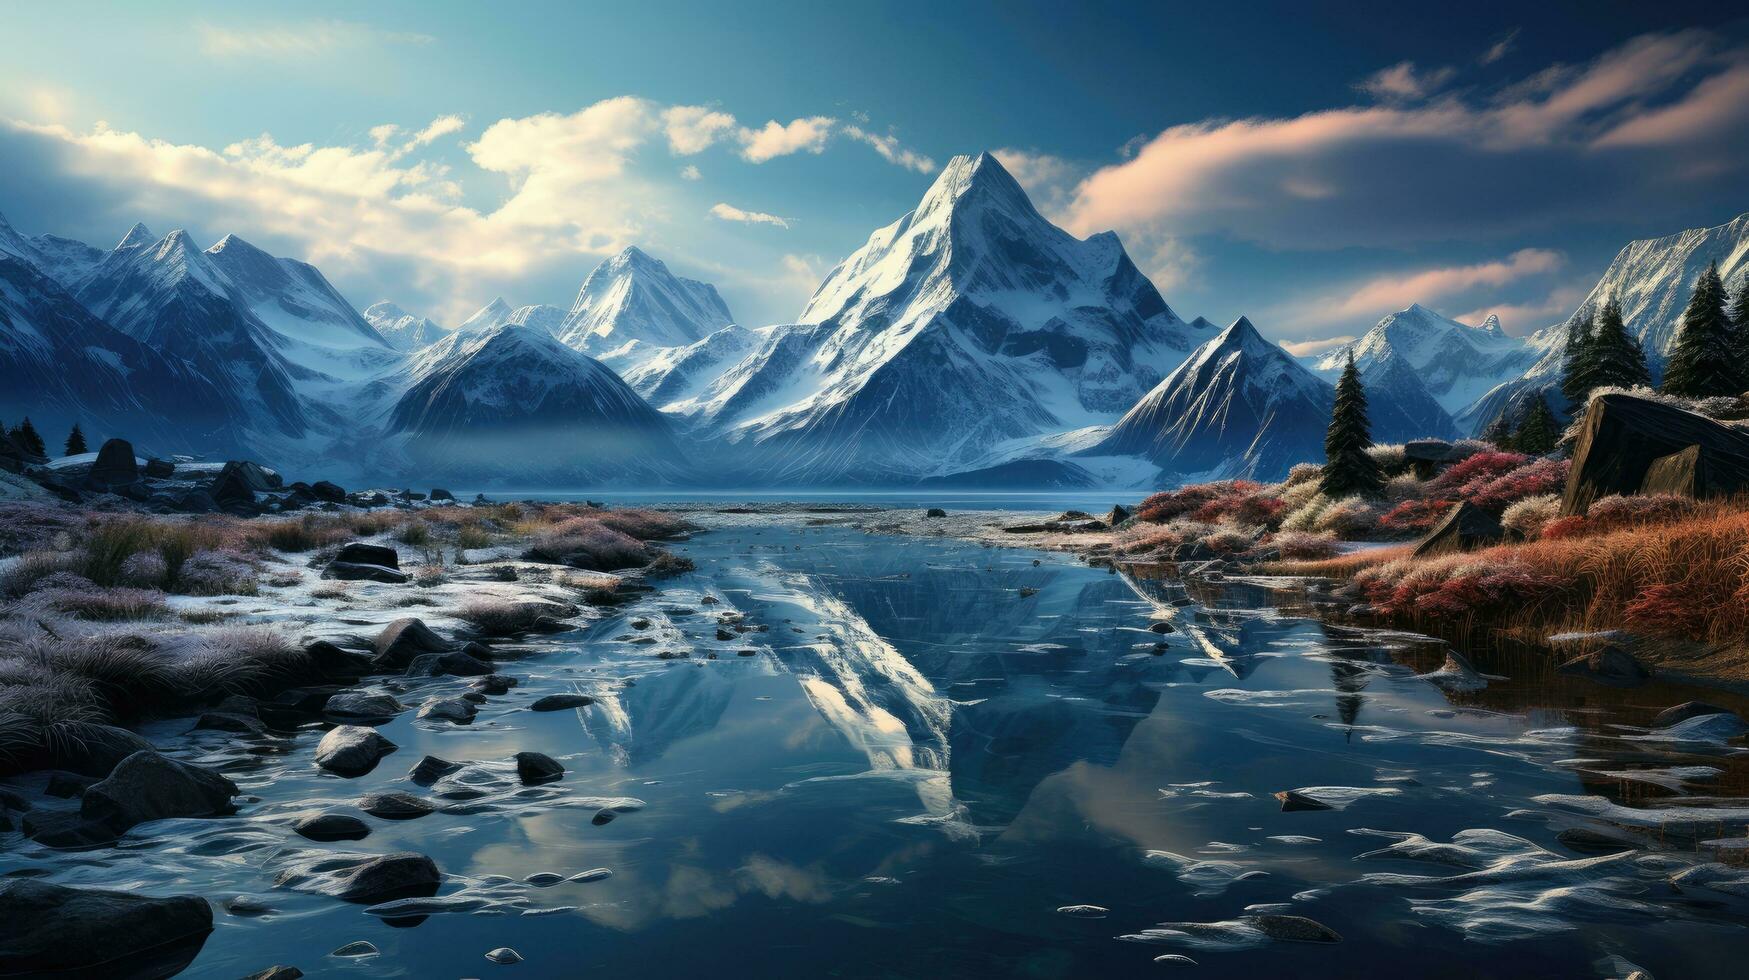 gefroren Eis See und hoch schneebedeckt Winter Berge beim Sonnenuntergang, schön Berg natürlich Landschaft foto